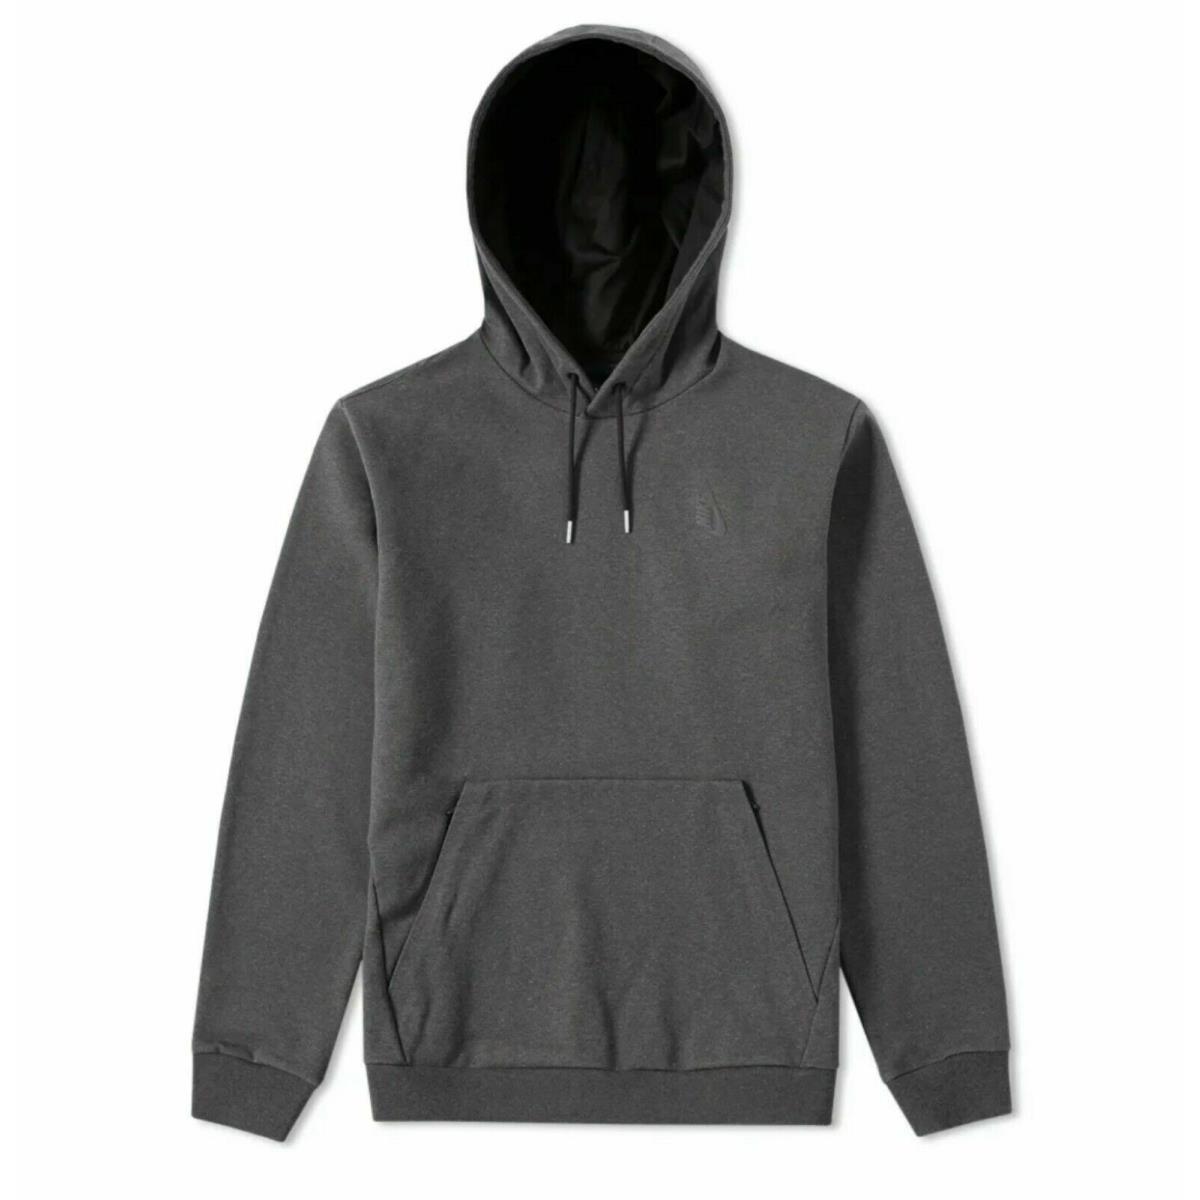 Nike Nikelab Essential PO Hoodie Jumper Jacket Gray Men Size L 848743-032